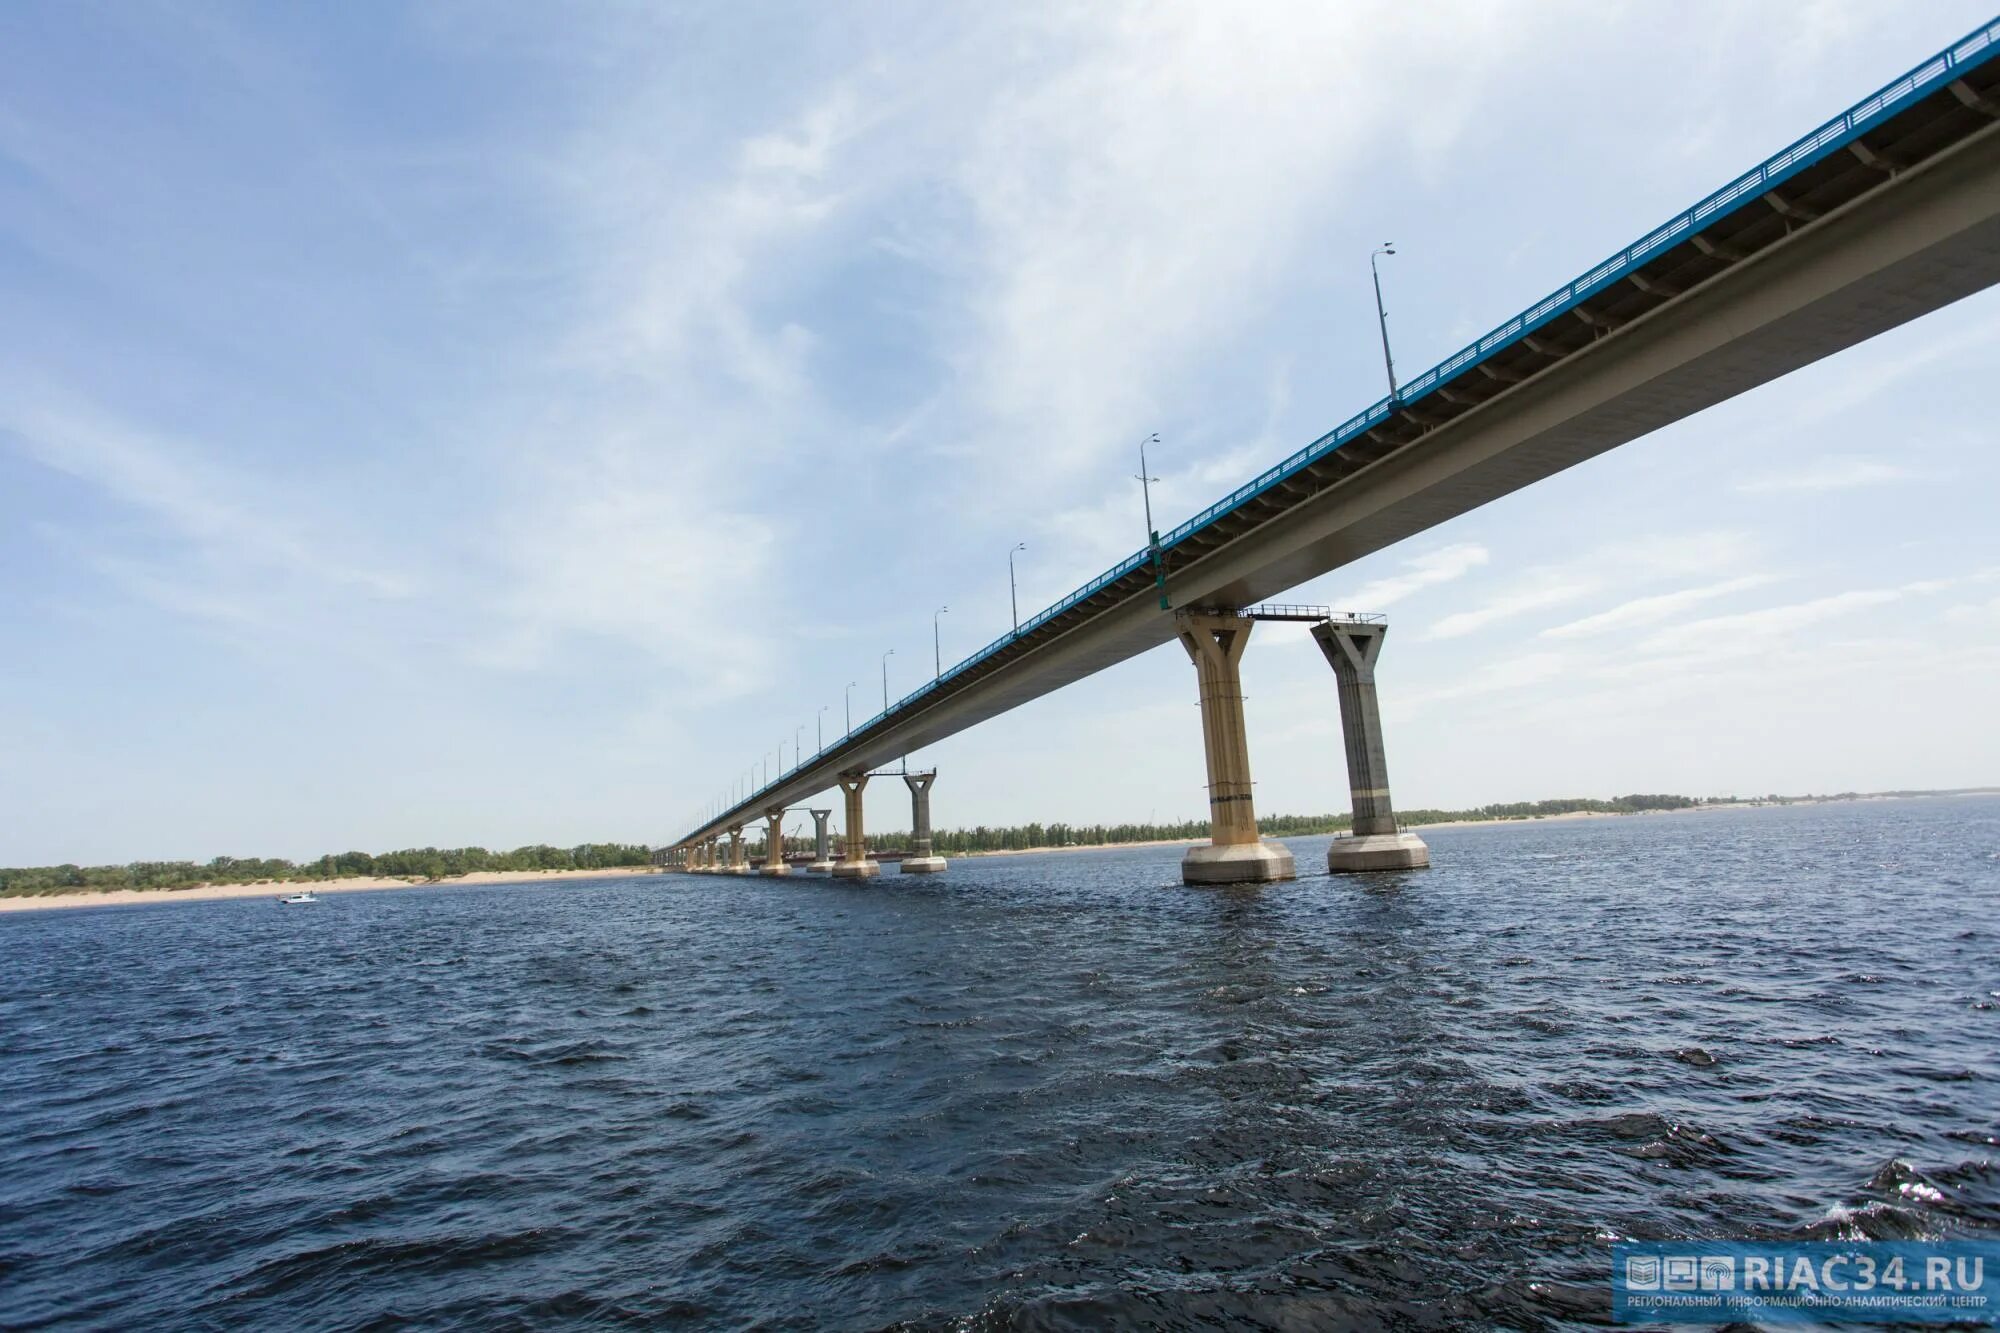 Мост через Волгу в Волгограде. Танцующий мост в Волгограде. Мост Волгоград Краснослободск. Волгоградский мост мосты через Волгу.